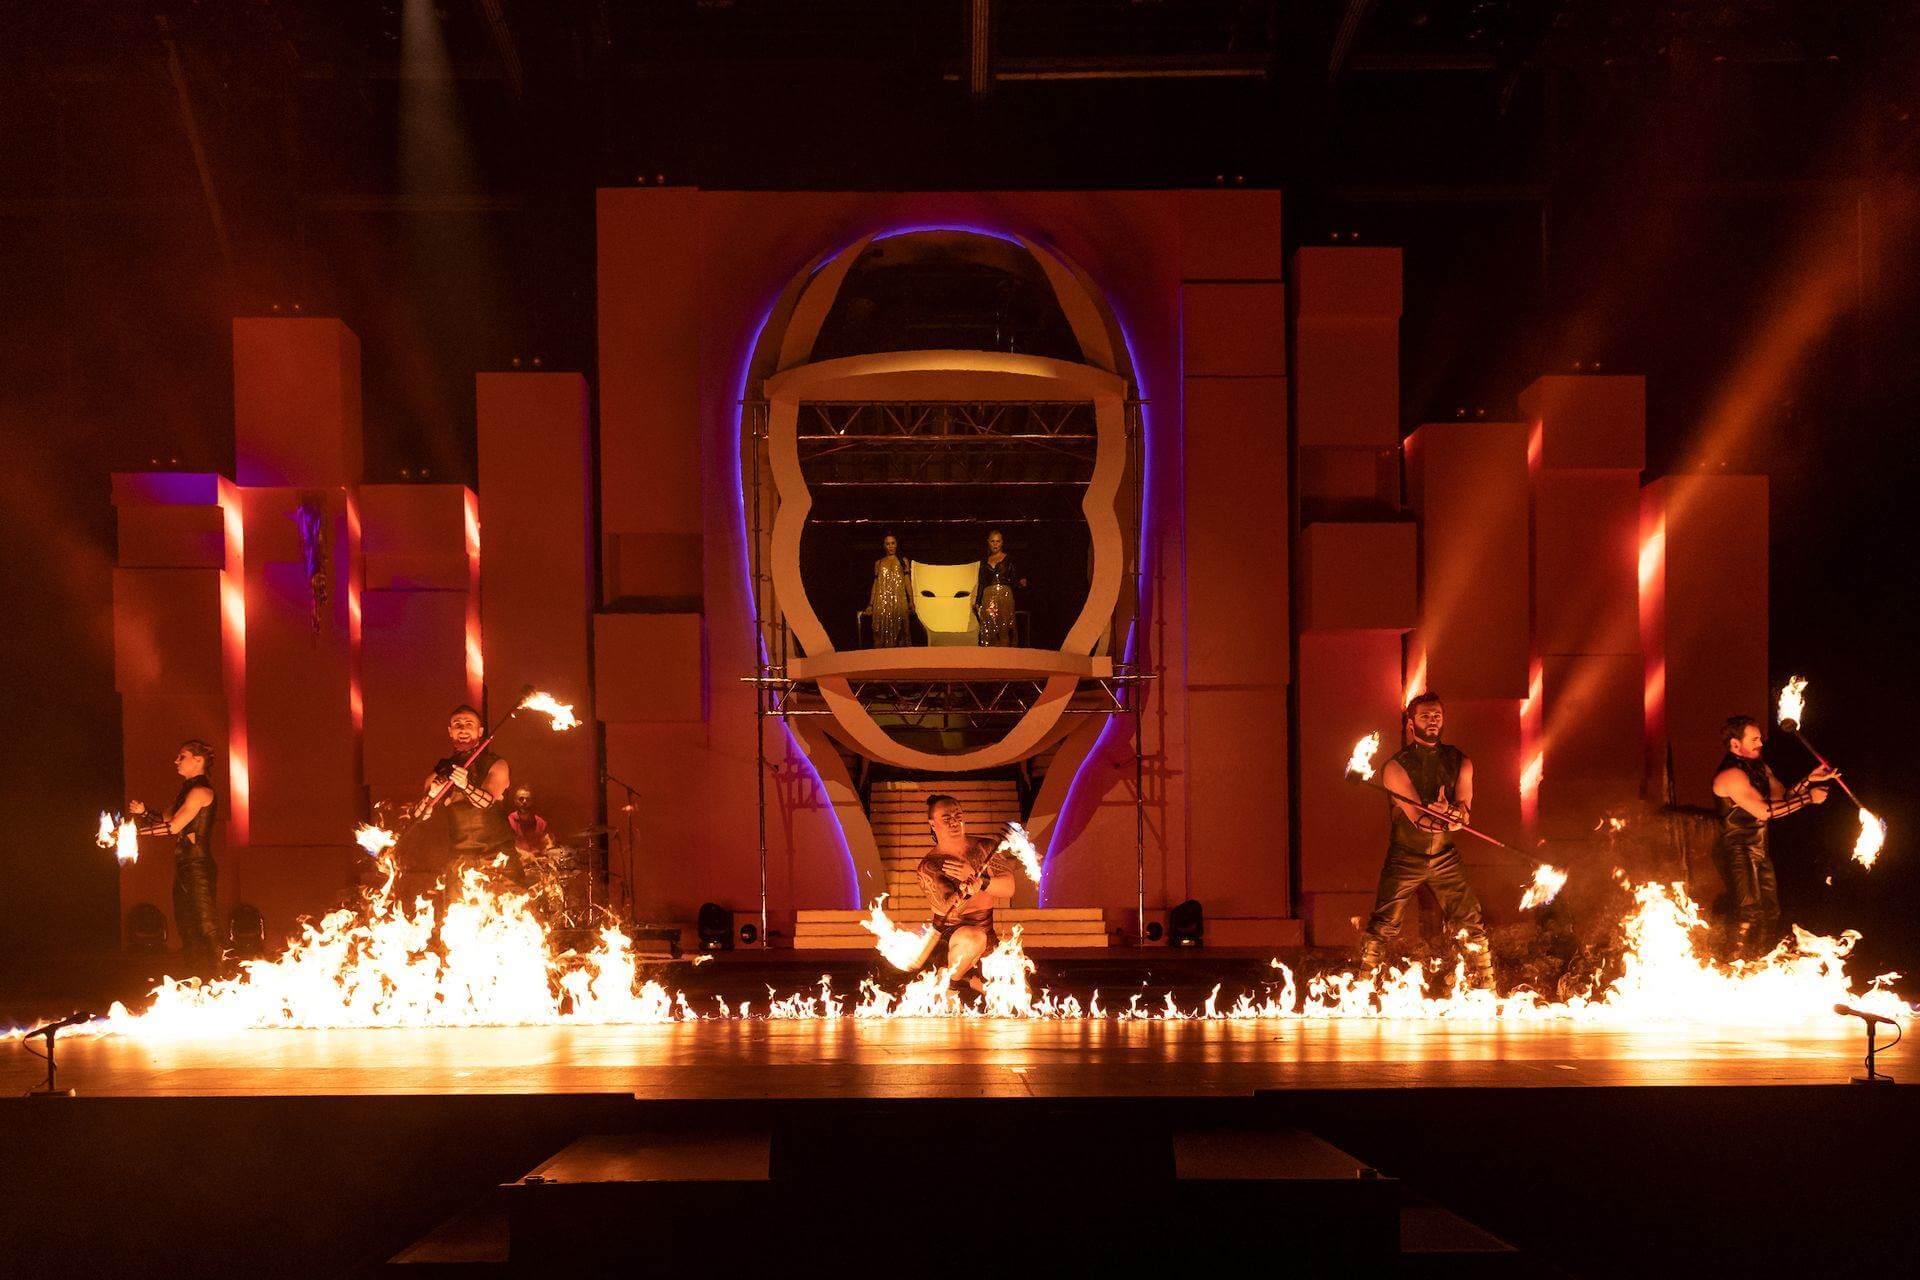 Diva by Cirque du Soleil 2018: Artistes fent jocs malabars amb foc